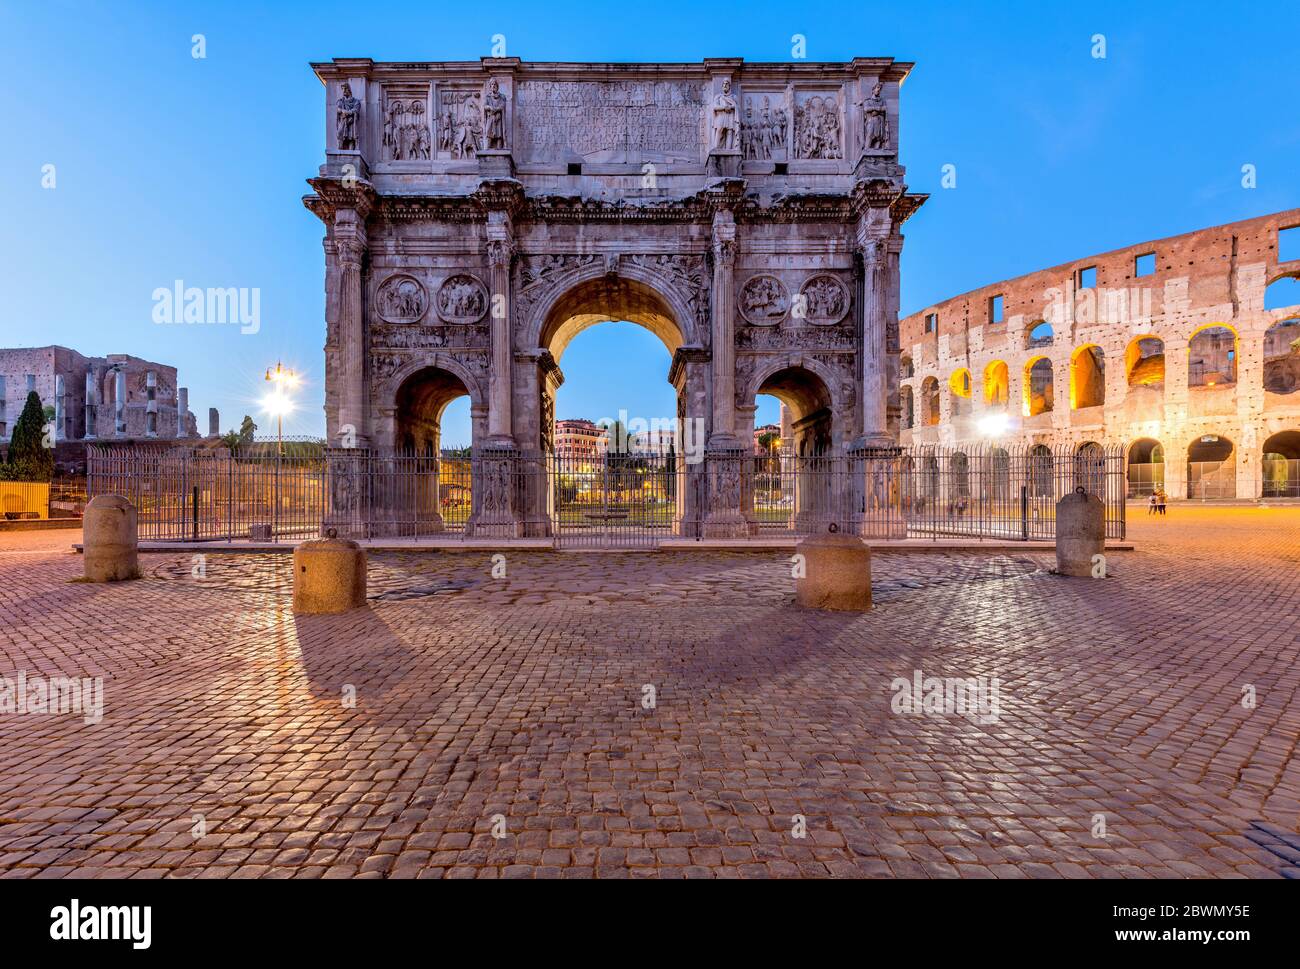 Arc de Constantine - vue de Dusk sur le côté sud de l'Arc de Constantine, debout entre le Colisée, à droite, et le Forum romain, à gauche. Rome, Italie. Banque D'Images